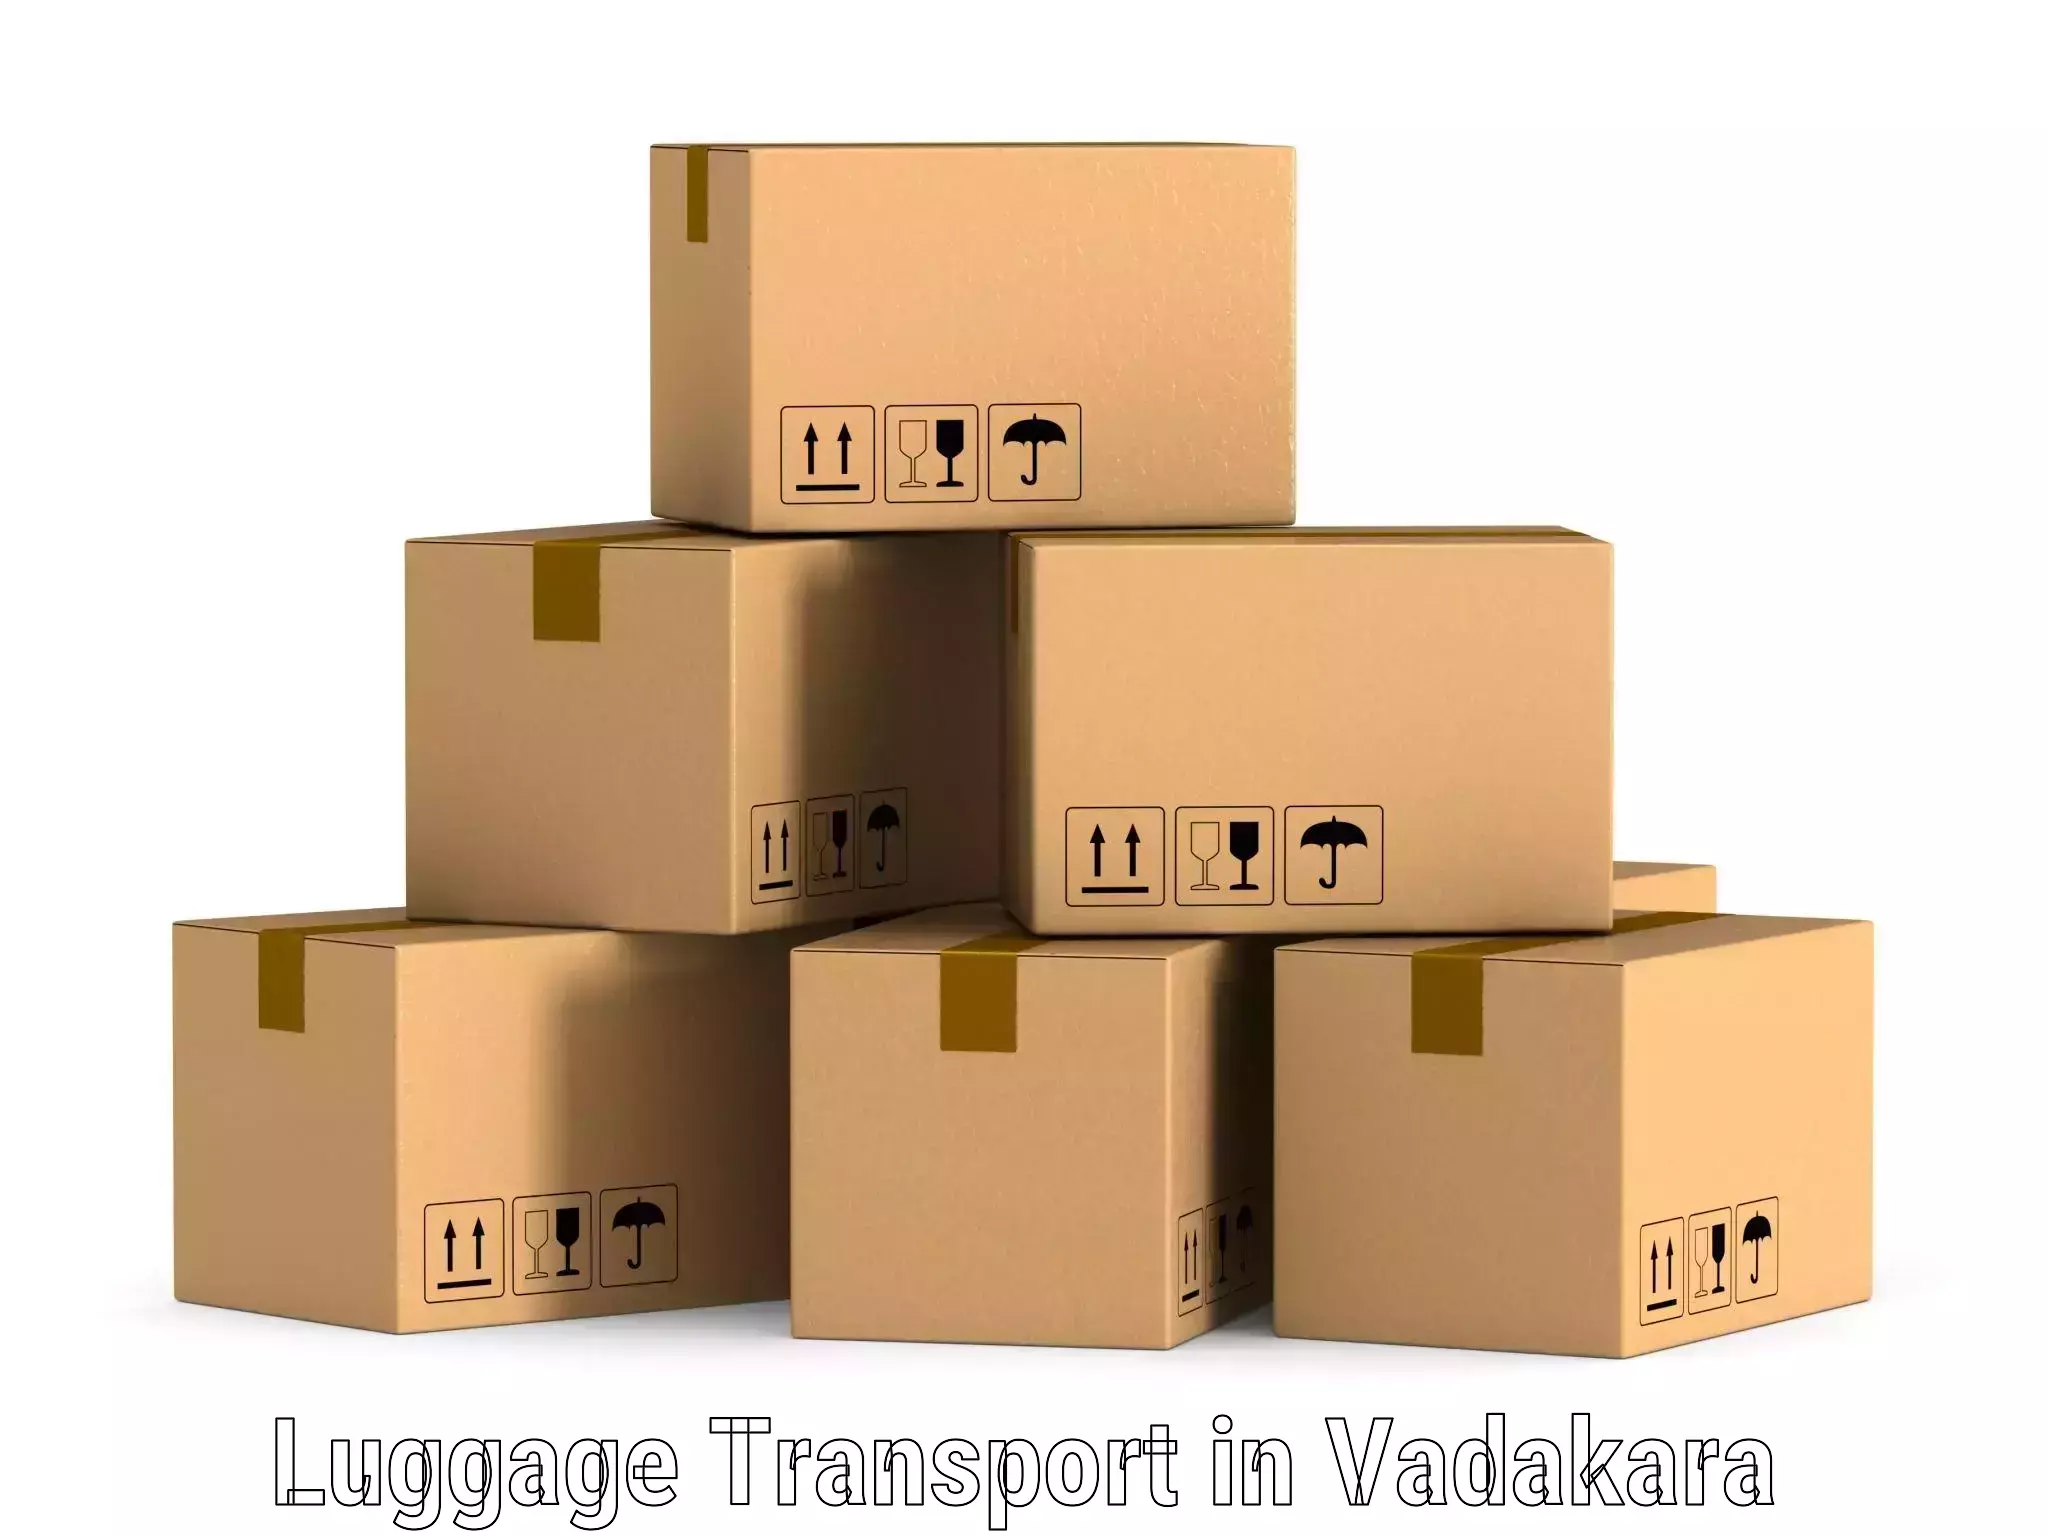 Outsize baggage transport in Vadakara